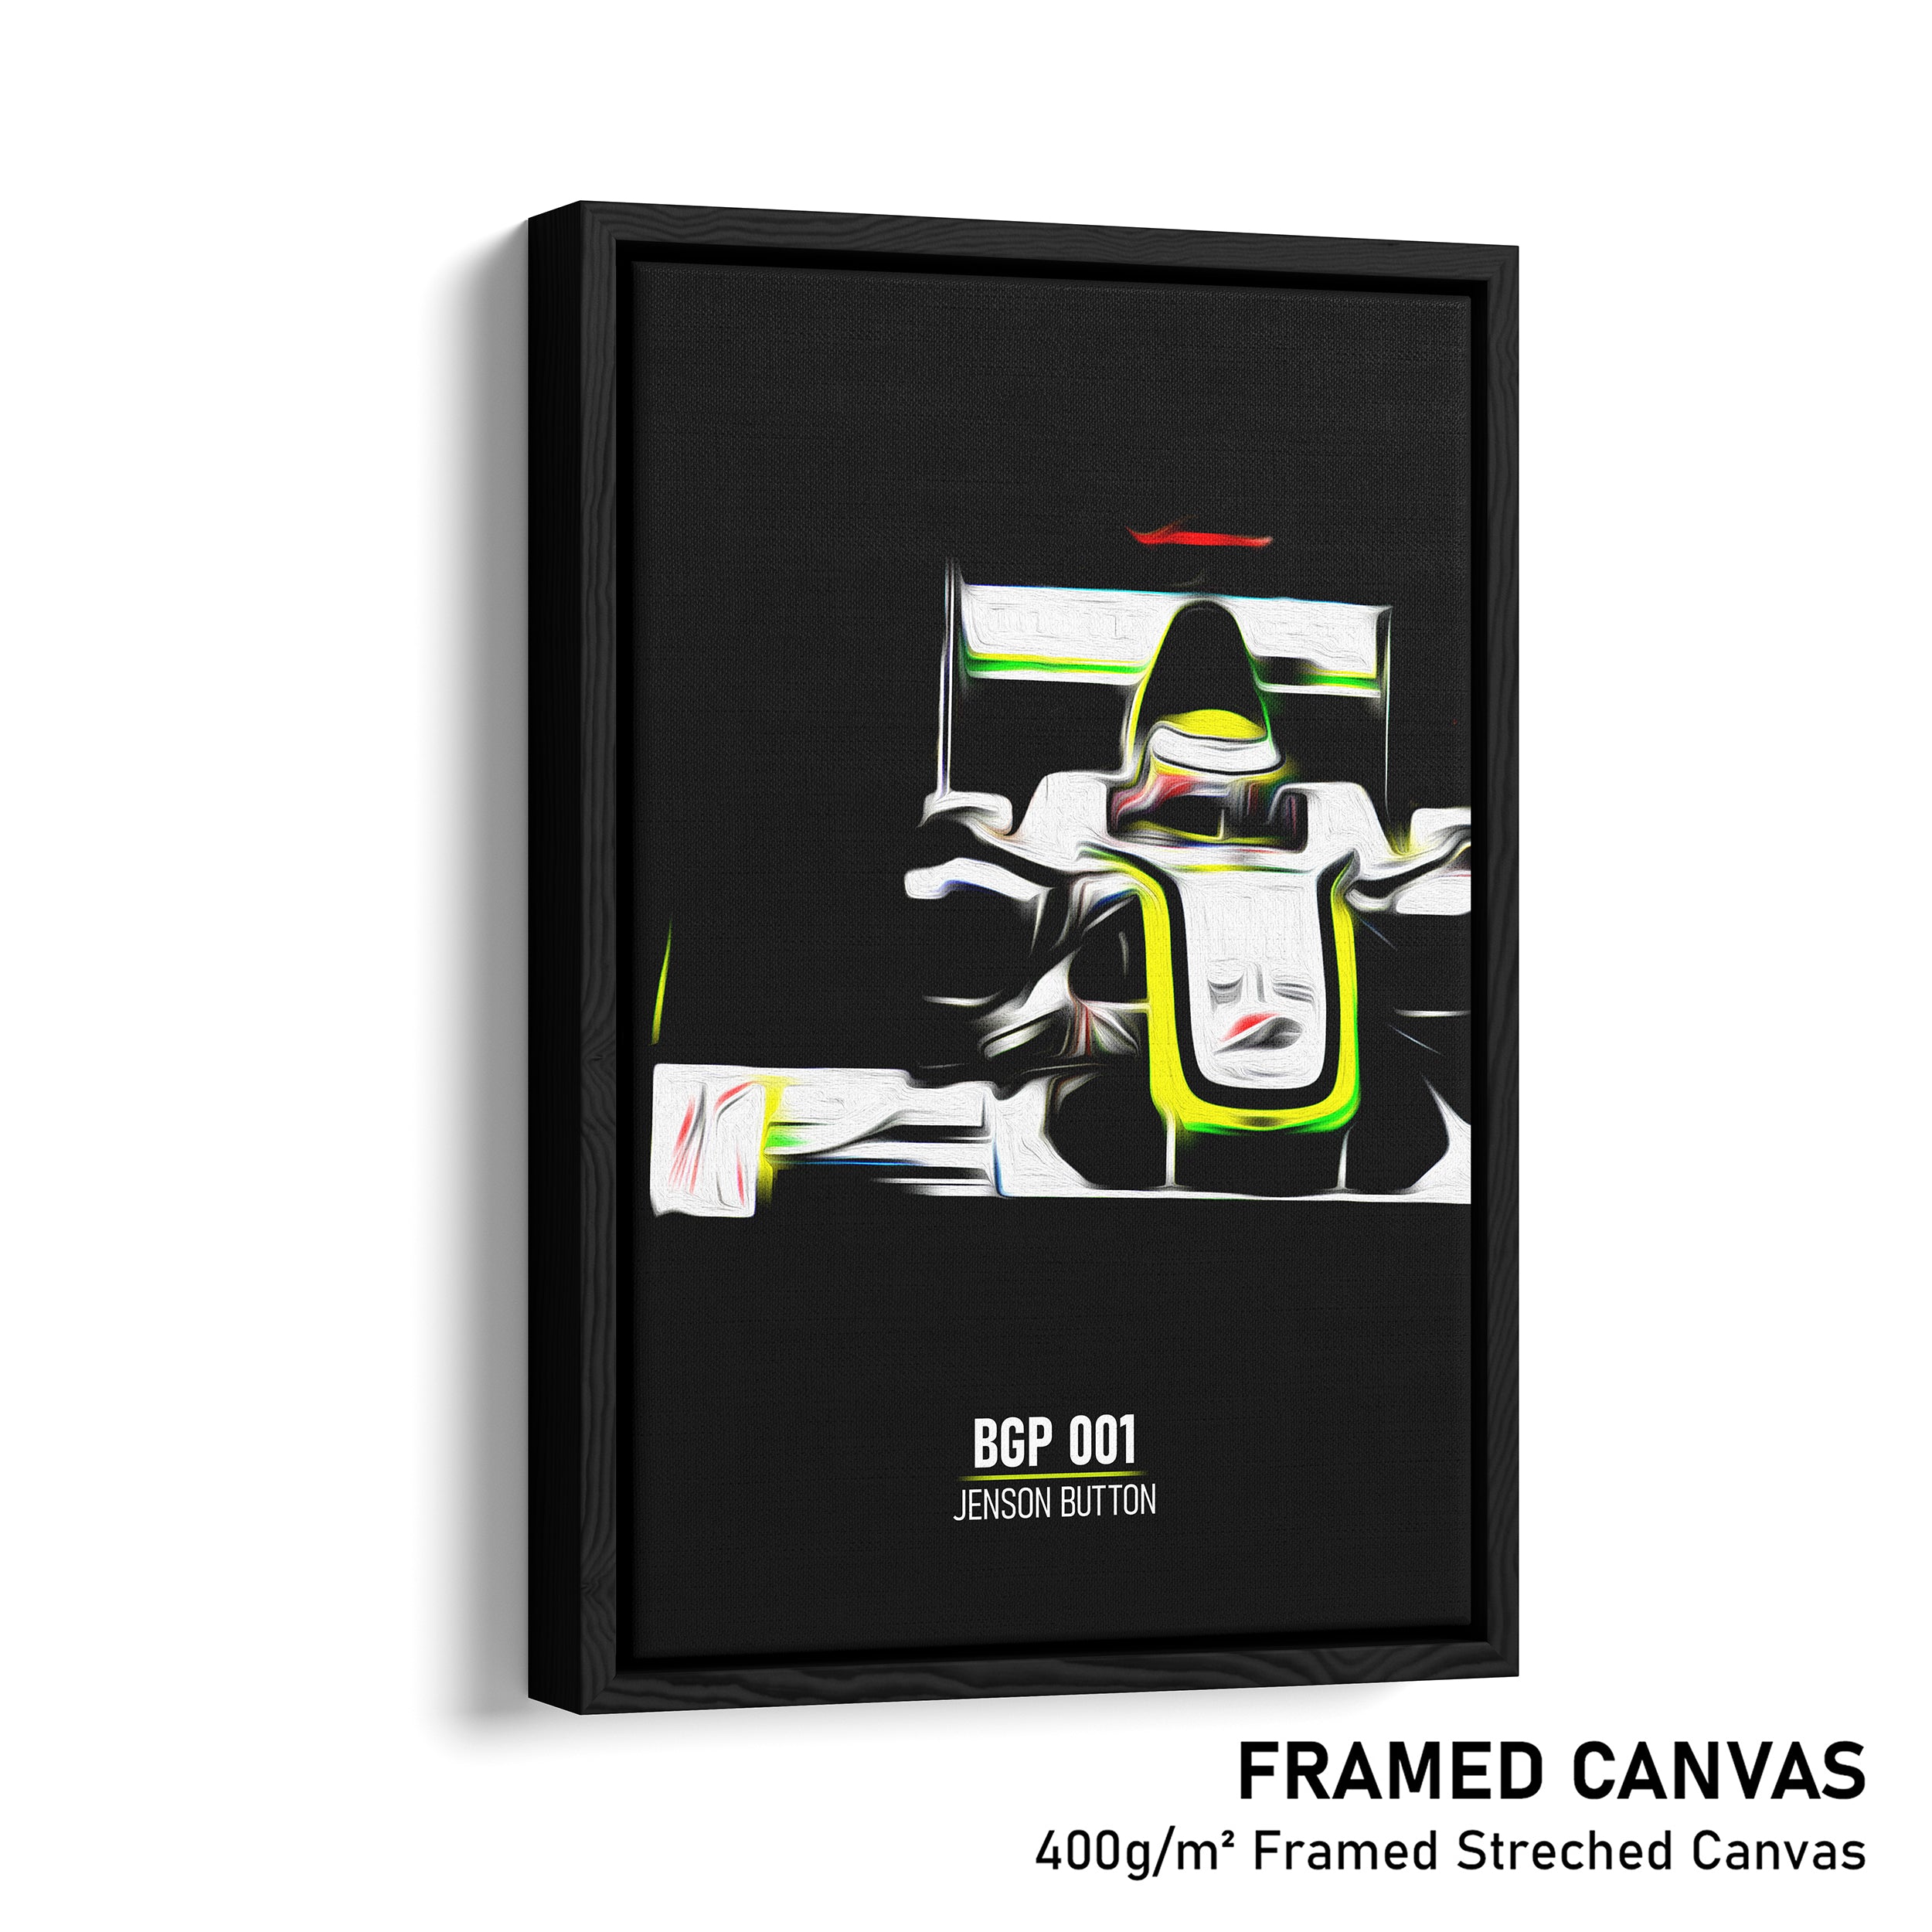 Brawn BGP 001, Jenson Button 2009 - Formula 1 Print